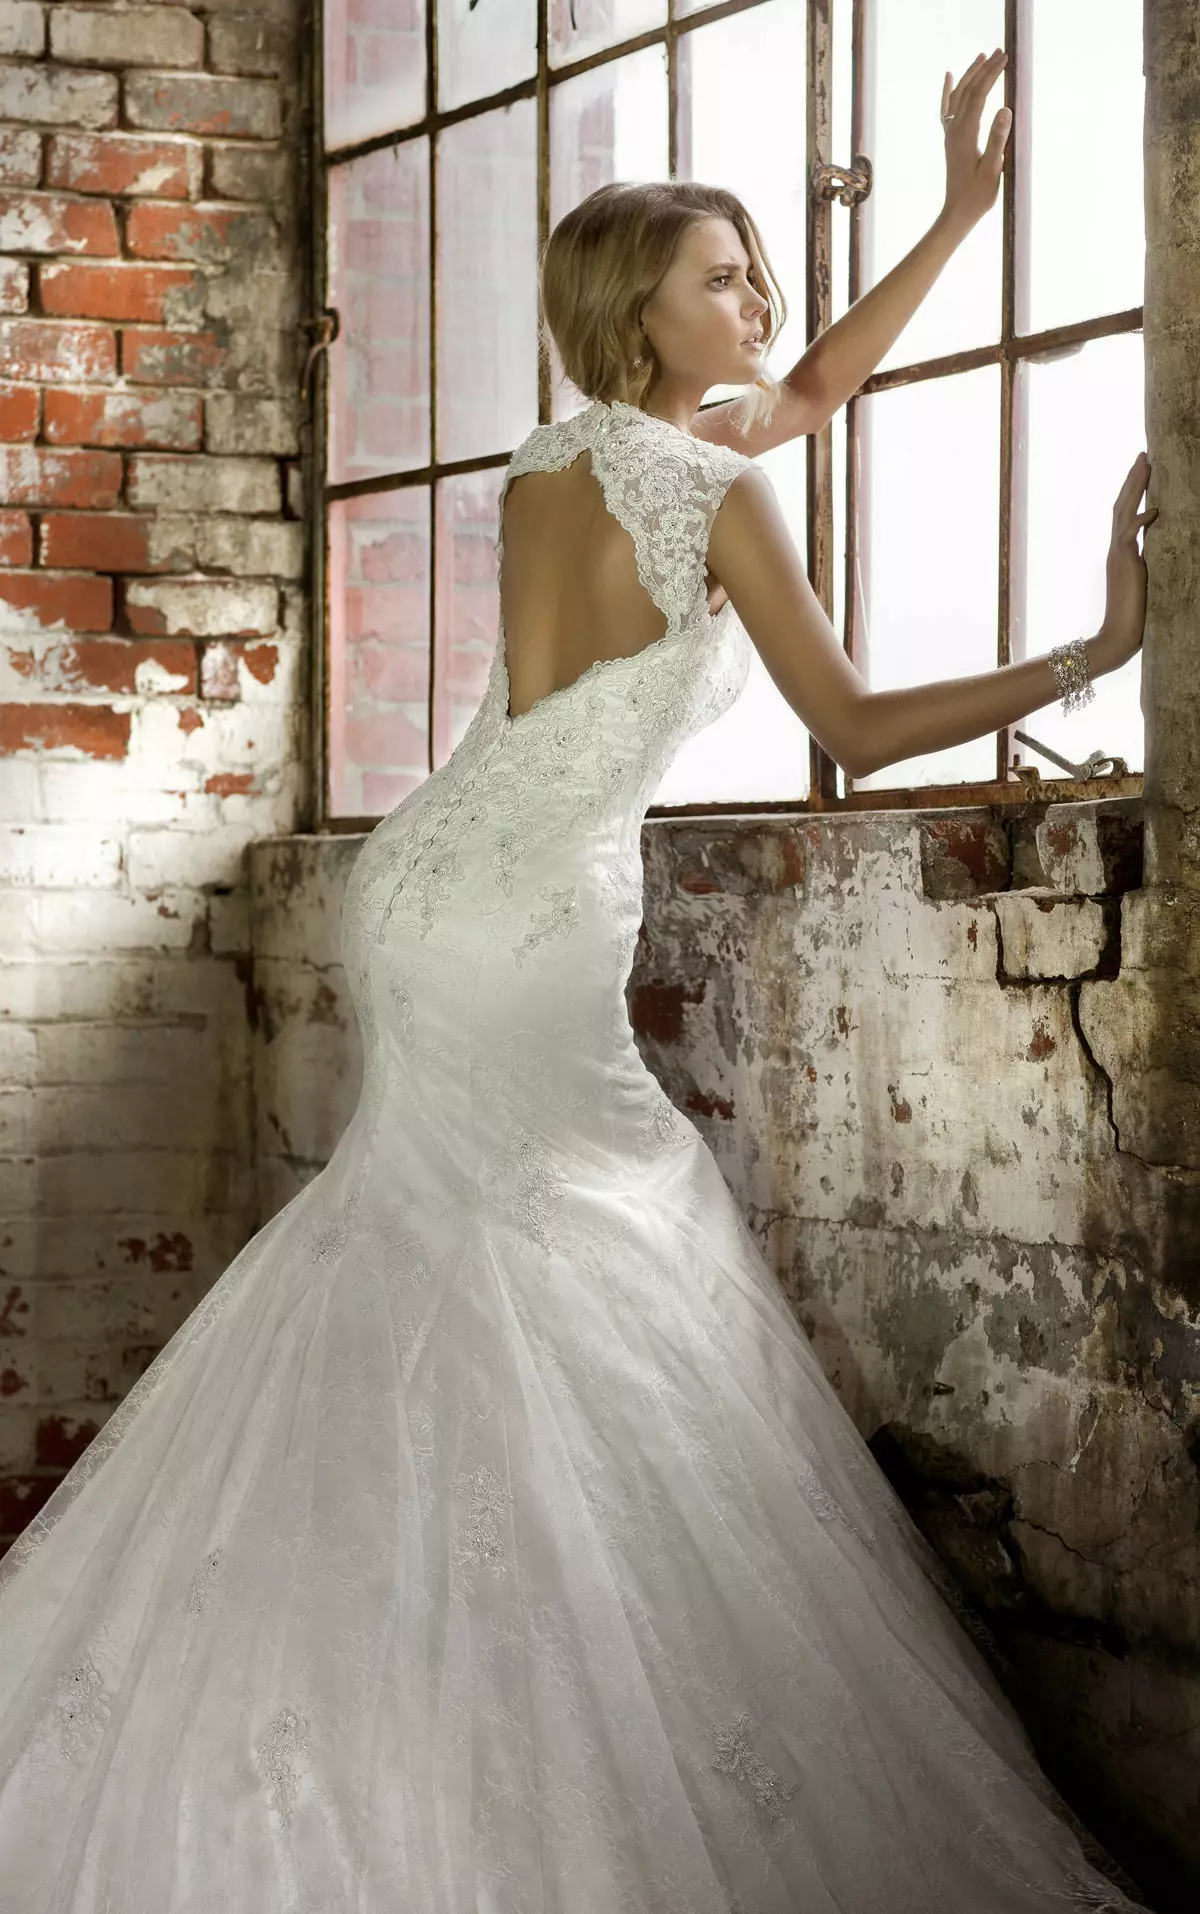 لباس عروسی پری دریایی با باز کردن باز